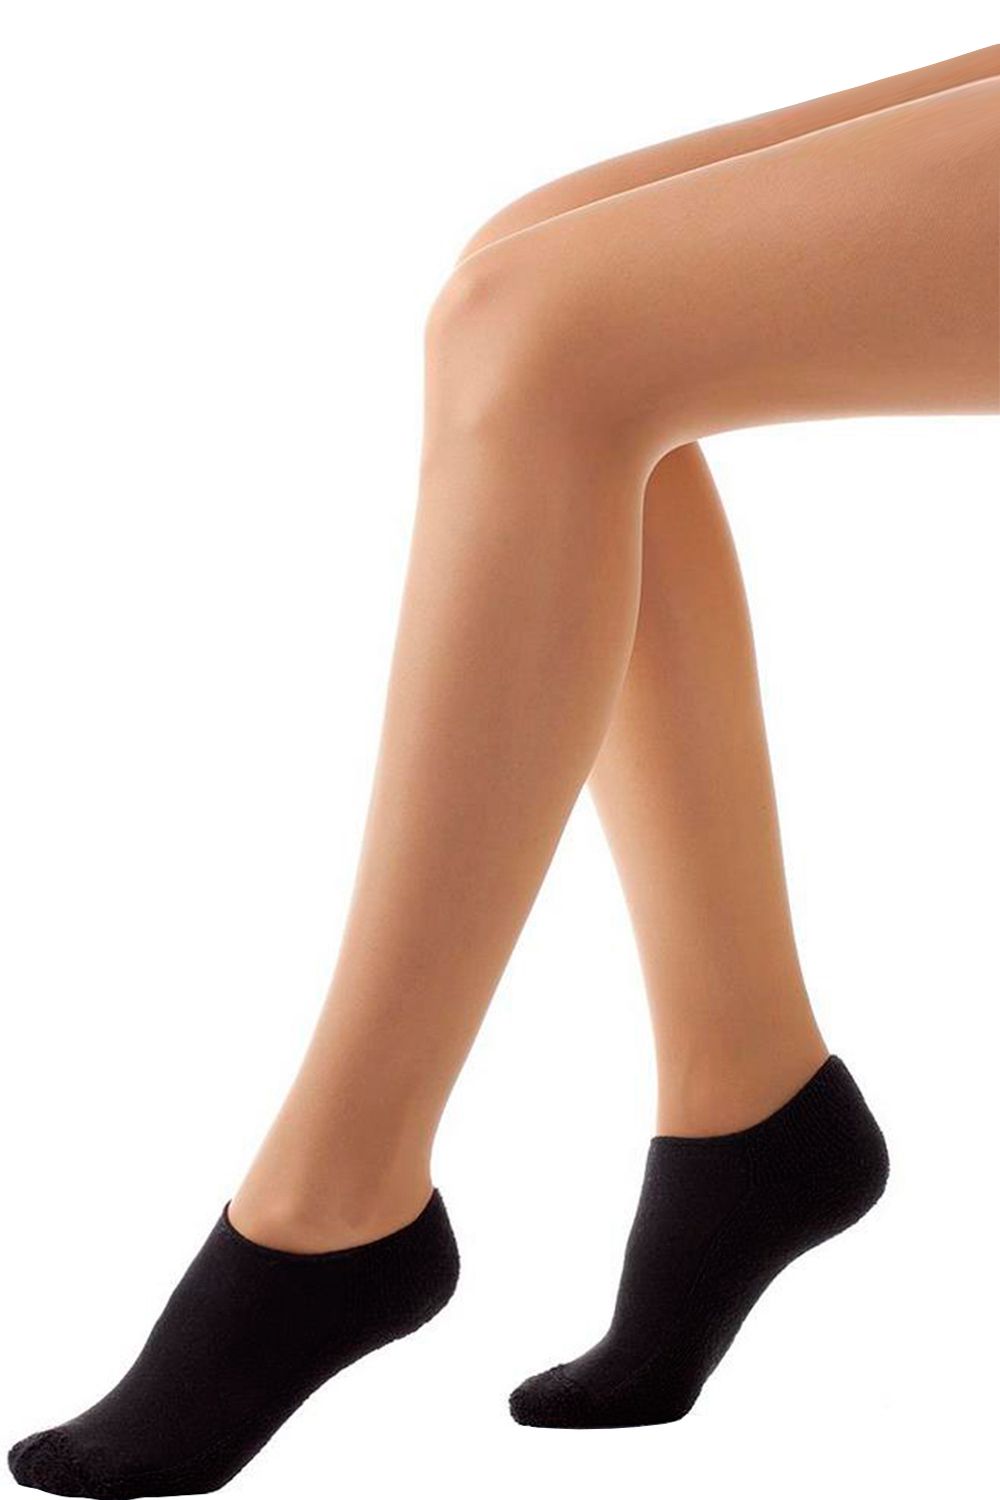 Короткие черные носки. Носки Arina. Девушки в черных носках. Носки черные женские. Черные носки для девочек.